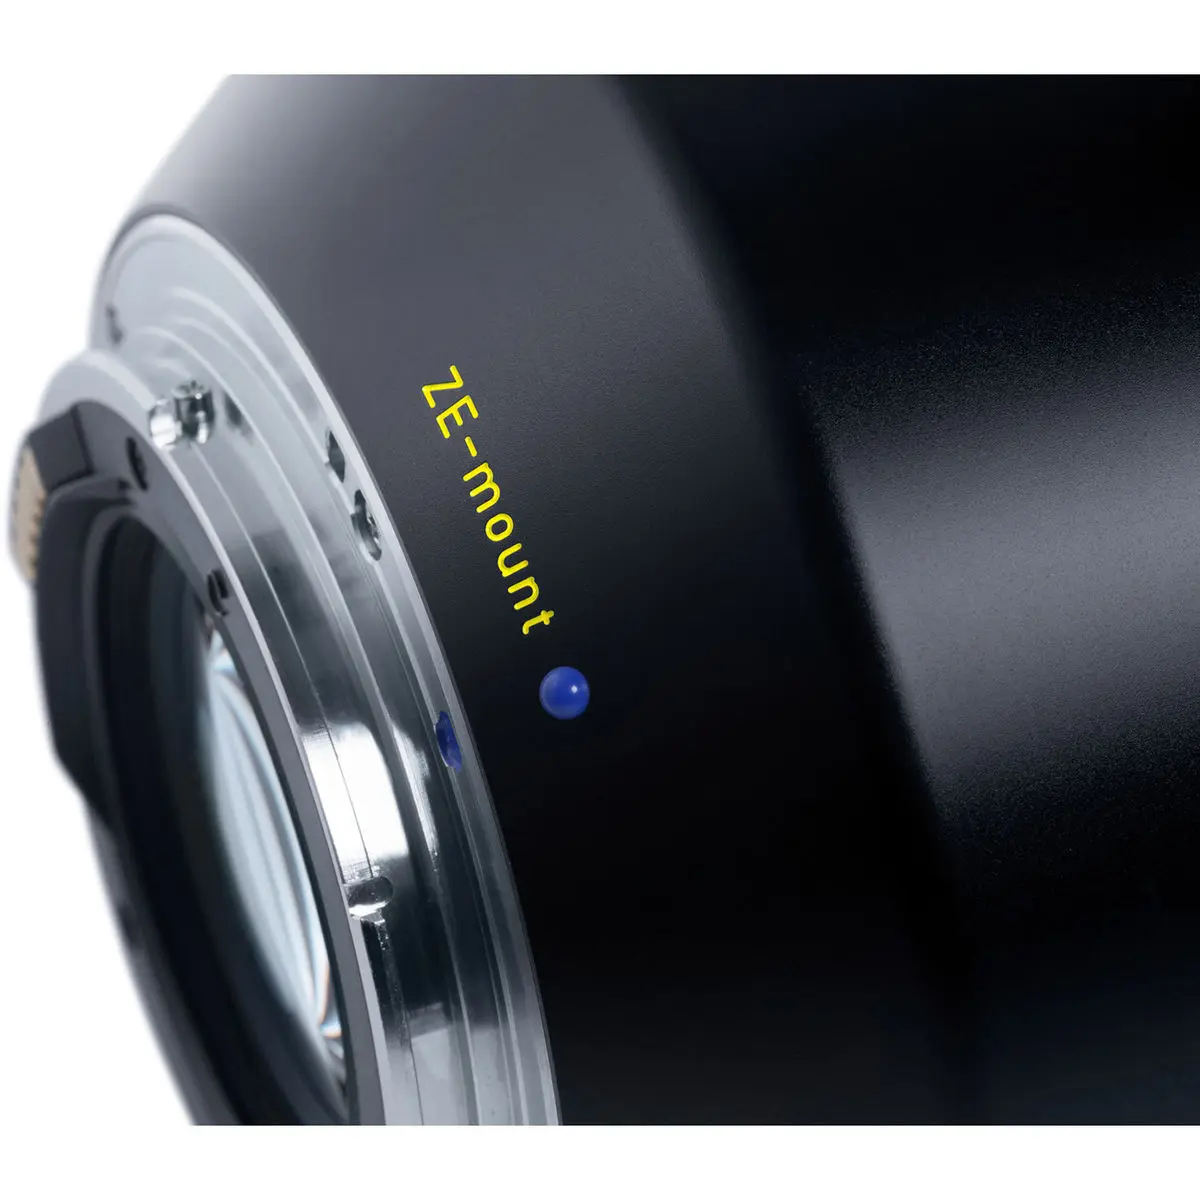 10. Carl Zeiss Otus 1.4/100 ZE (Canon) Lens